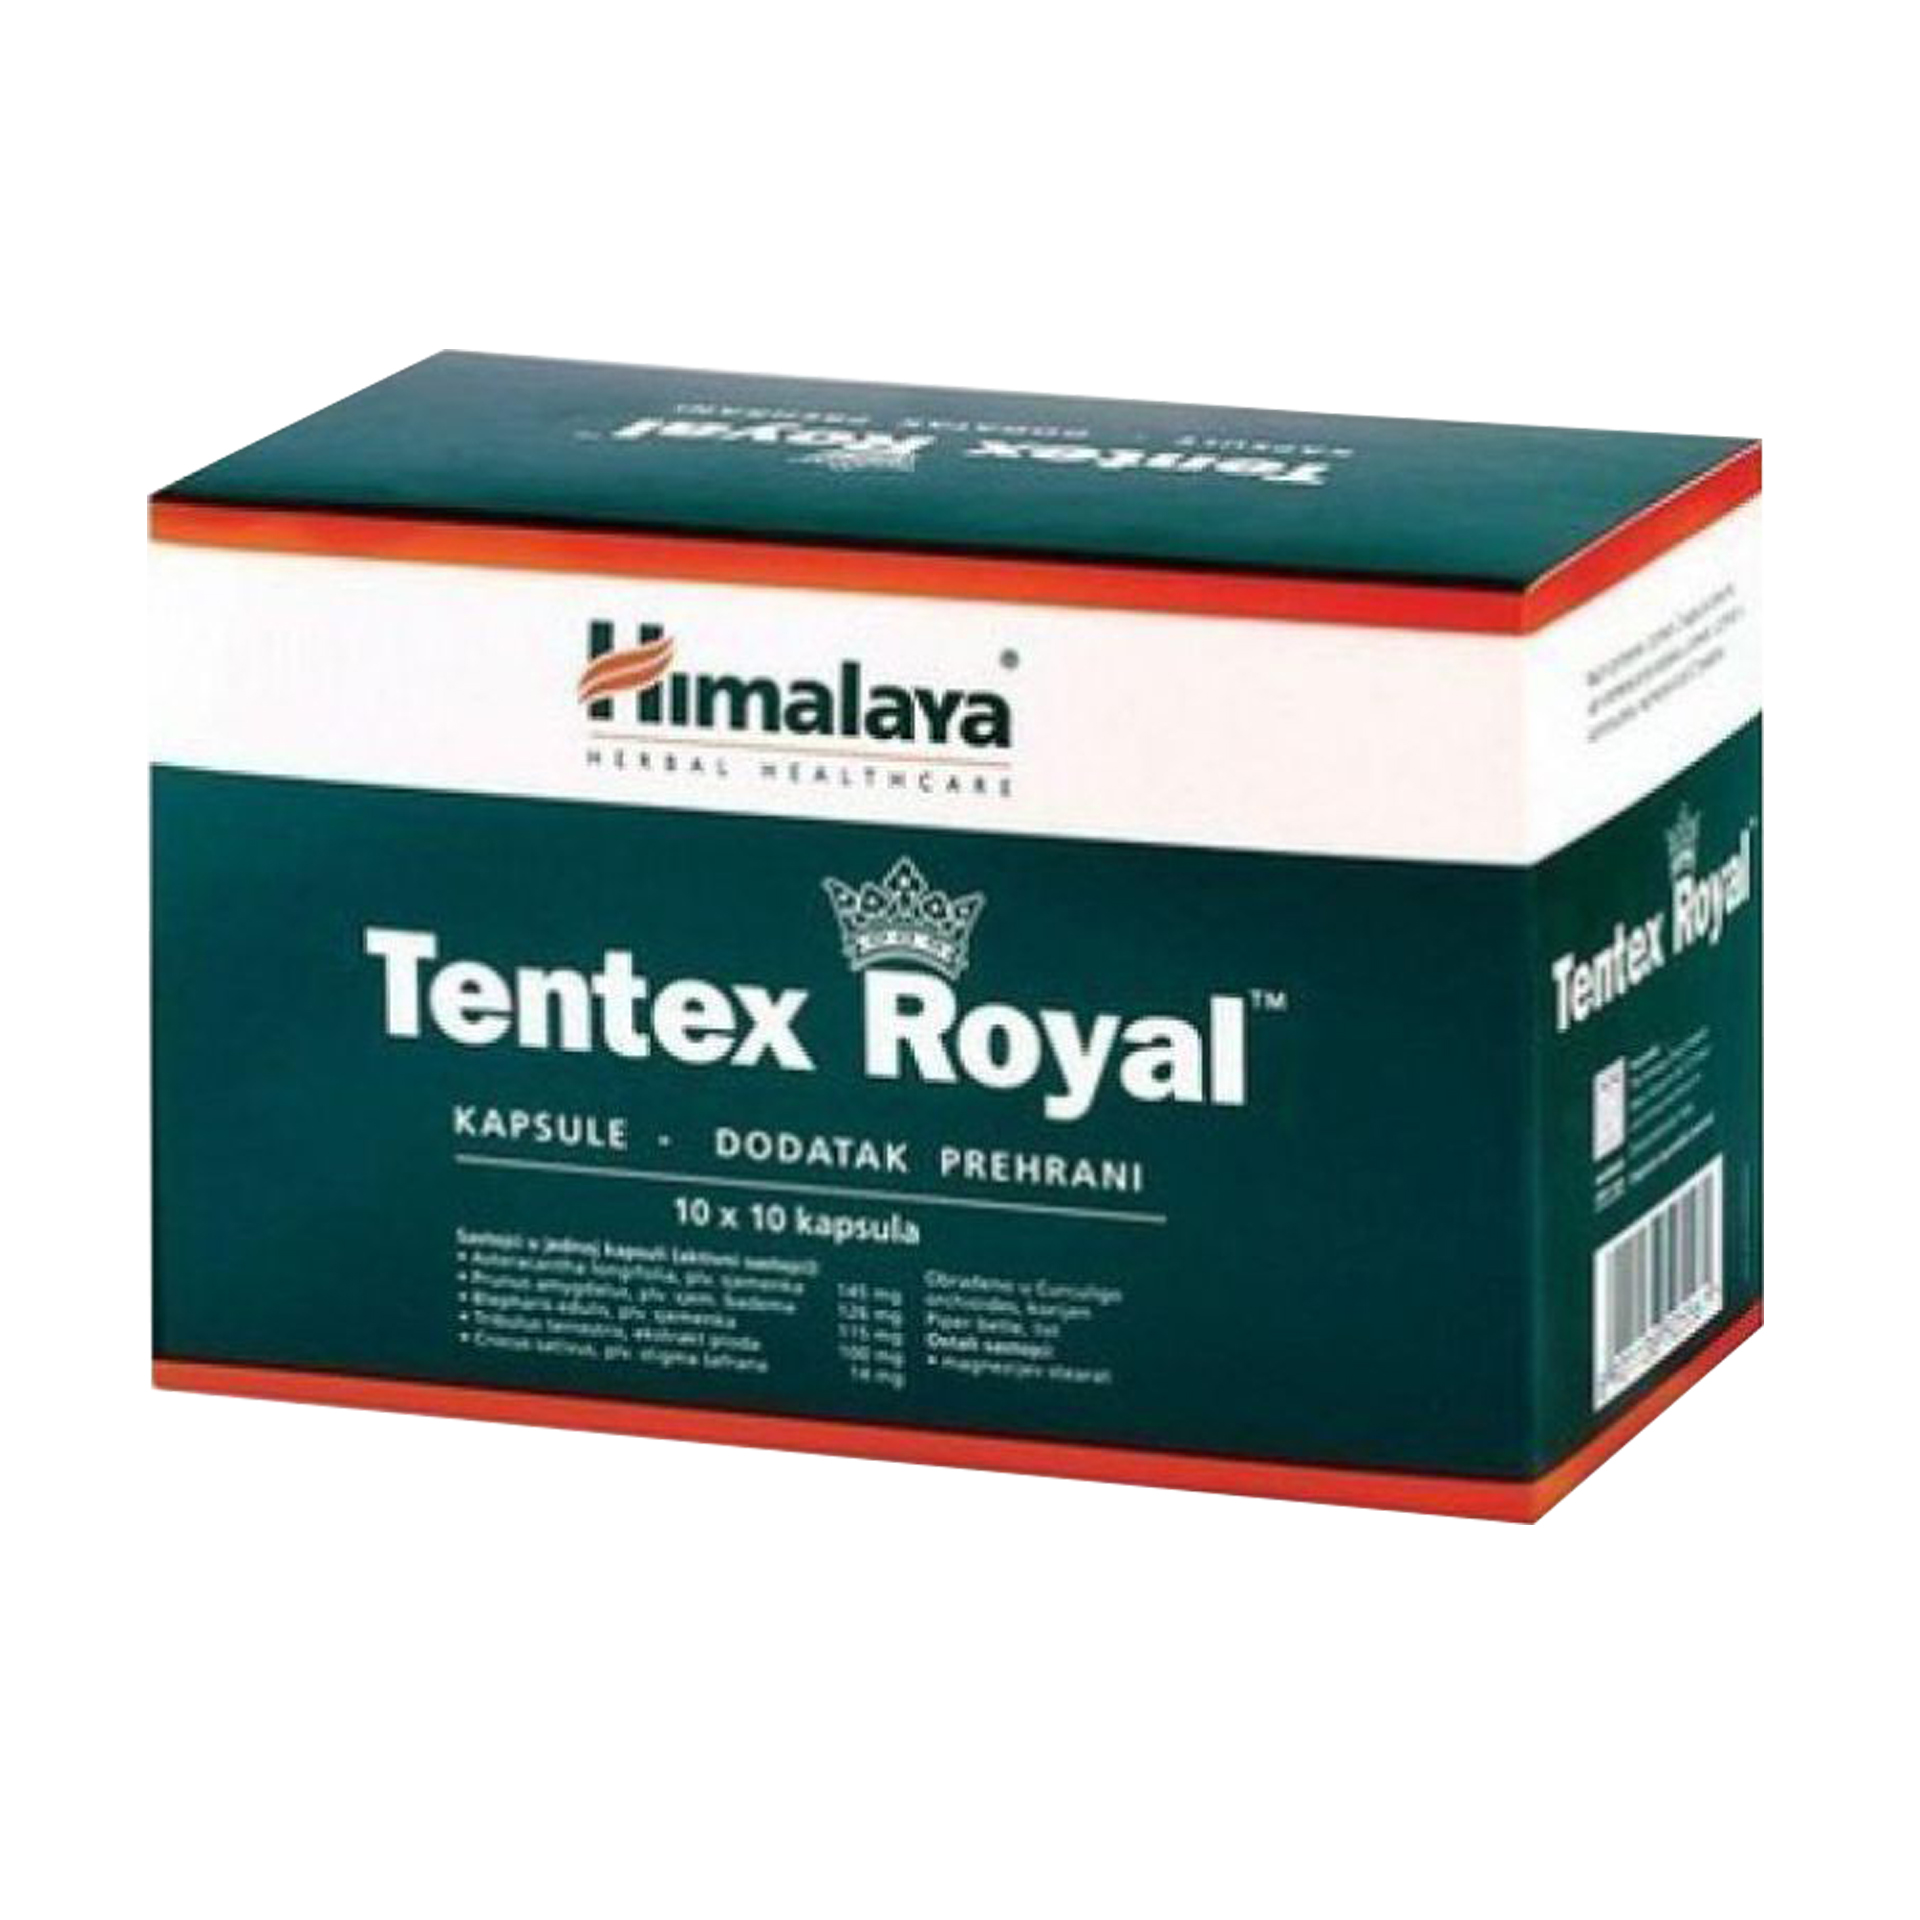 Buy Himalaya Tentex Royal Capsules at Best Price Online